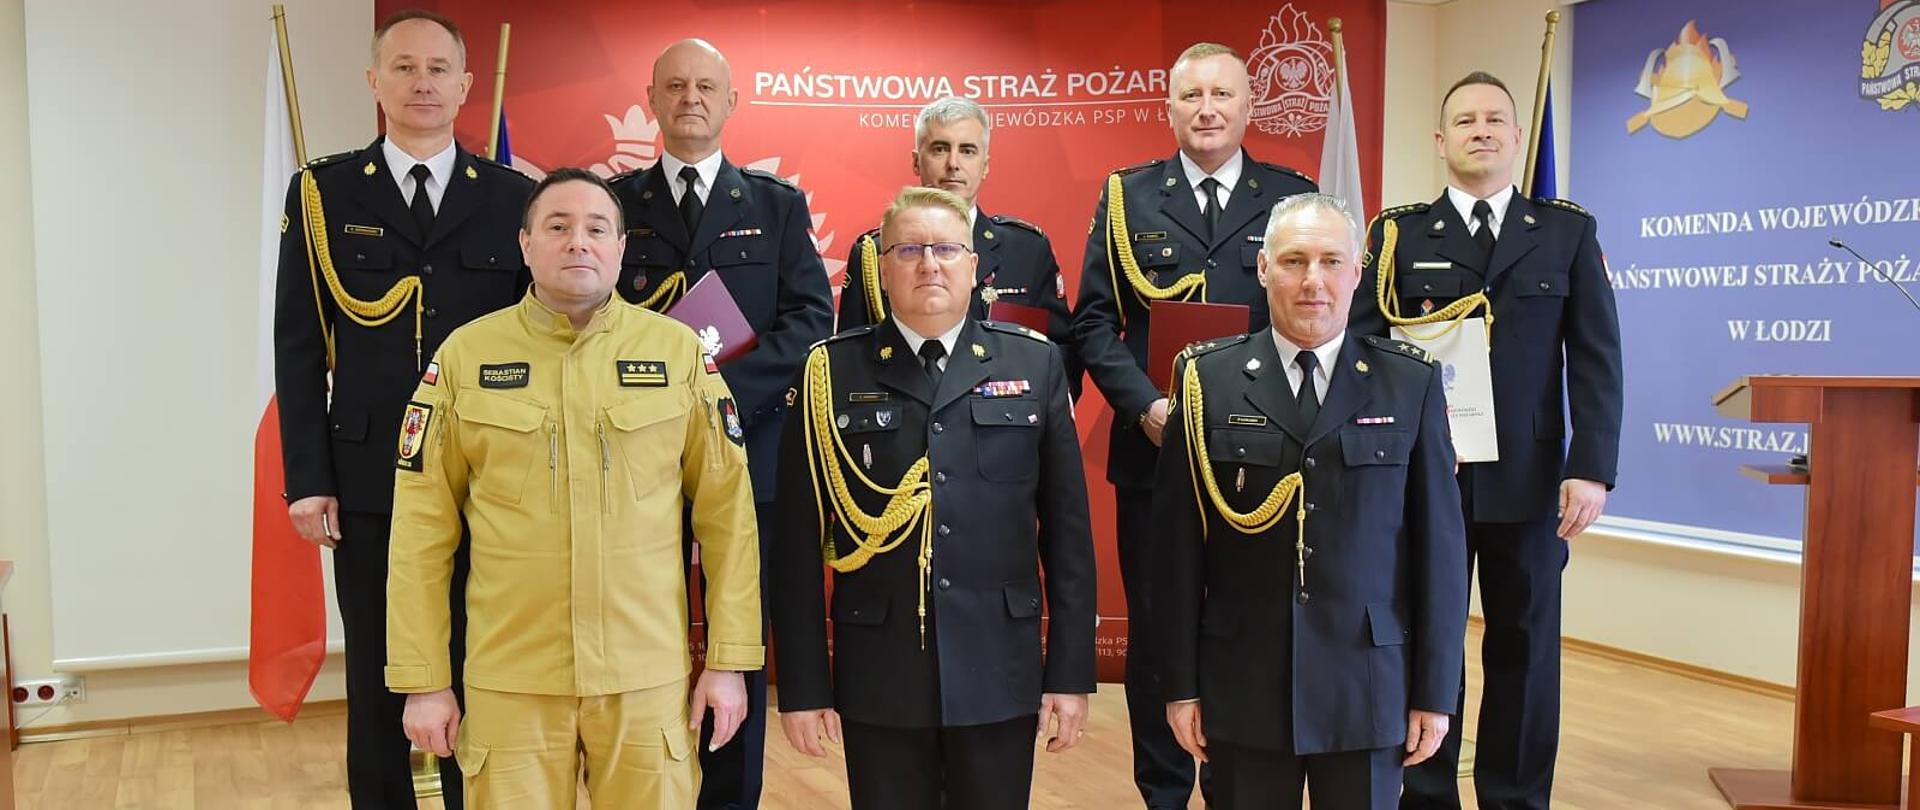 na zdjęciu 8 strażaków pozuje do zdjęcia na tle baneru z napisem Państwowa Straż Pożarna Komenda wojewódzka w Łodzi, jeden ze strażaków ma mundur w kolorze pisakowym reszta jest w mundurach wyjściowych